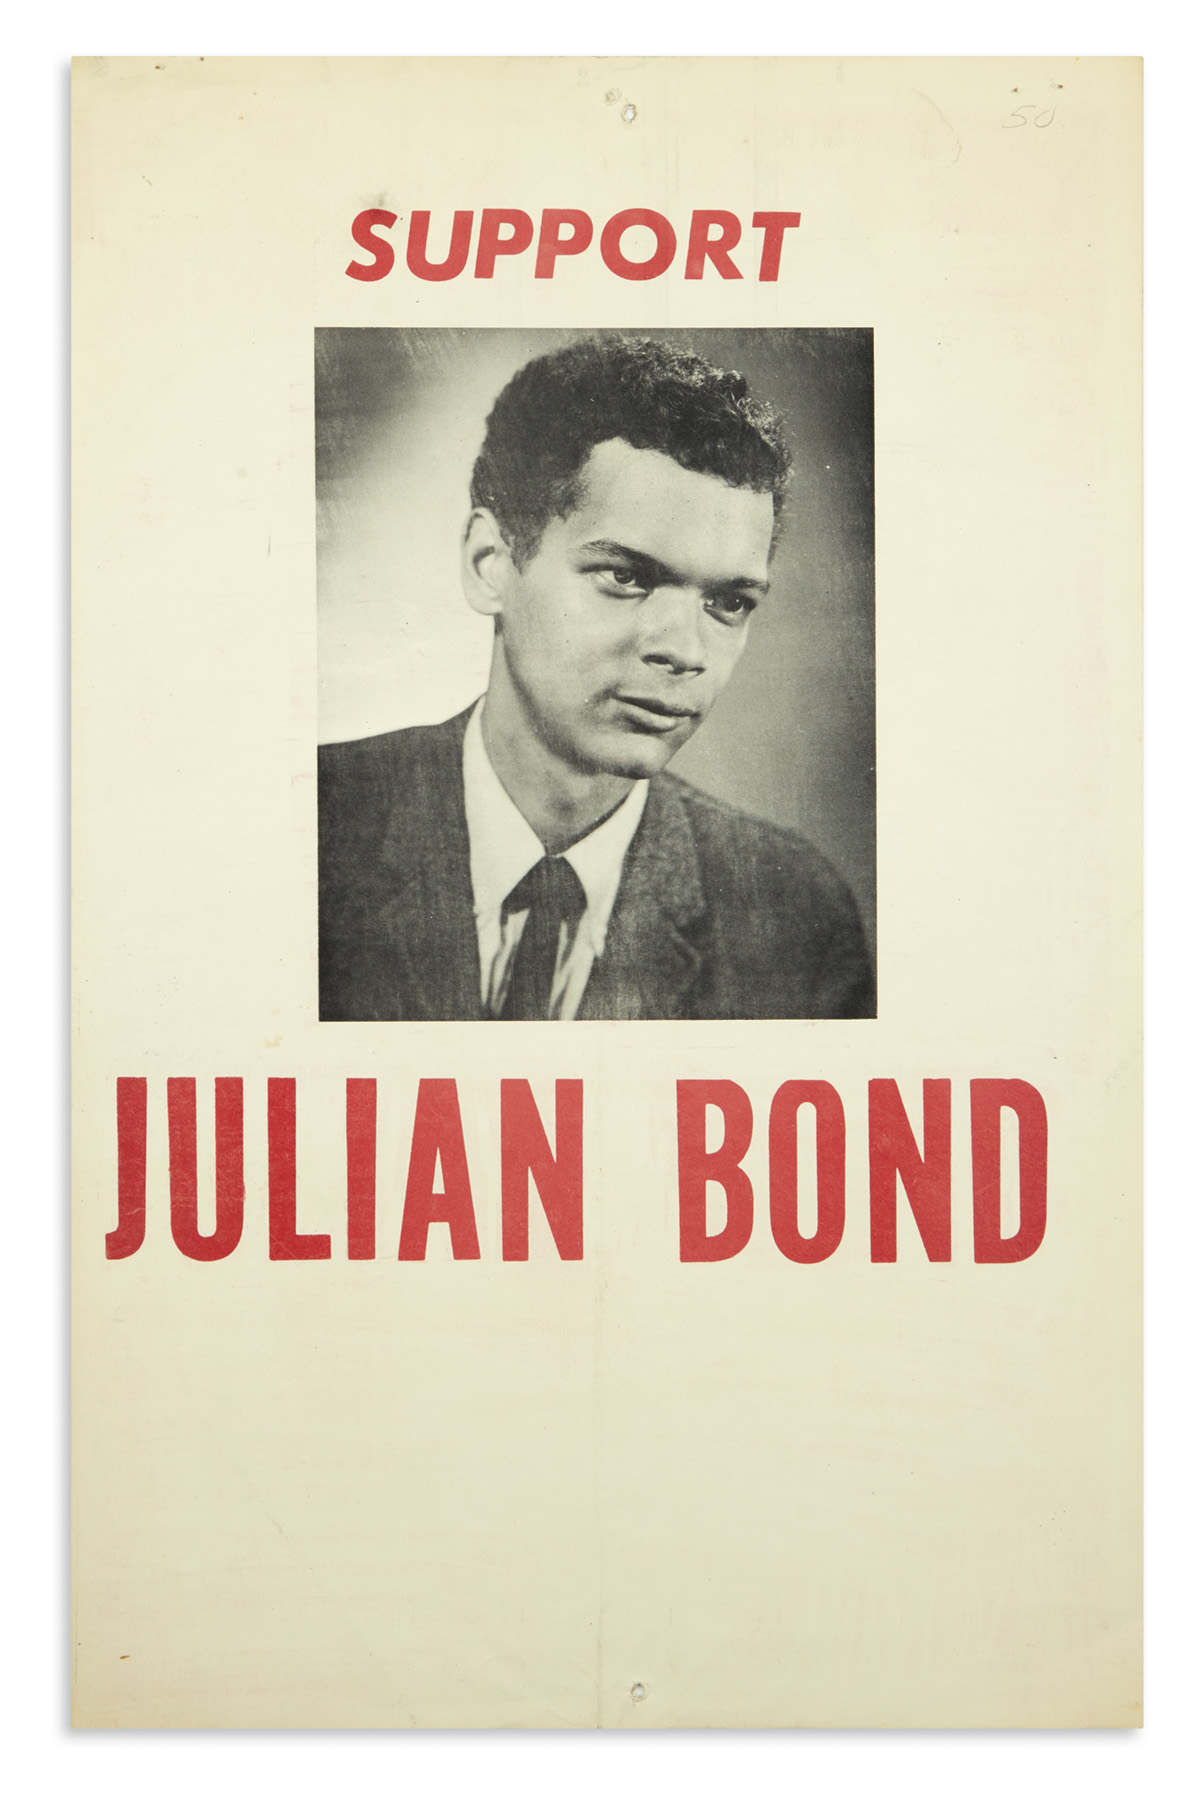 (POLITICS.) Support Julian Bond.